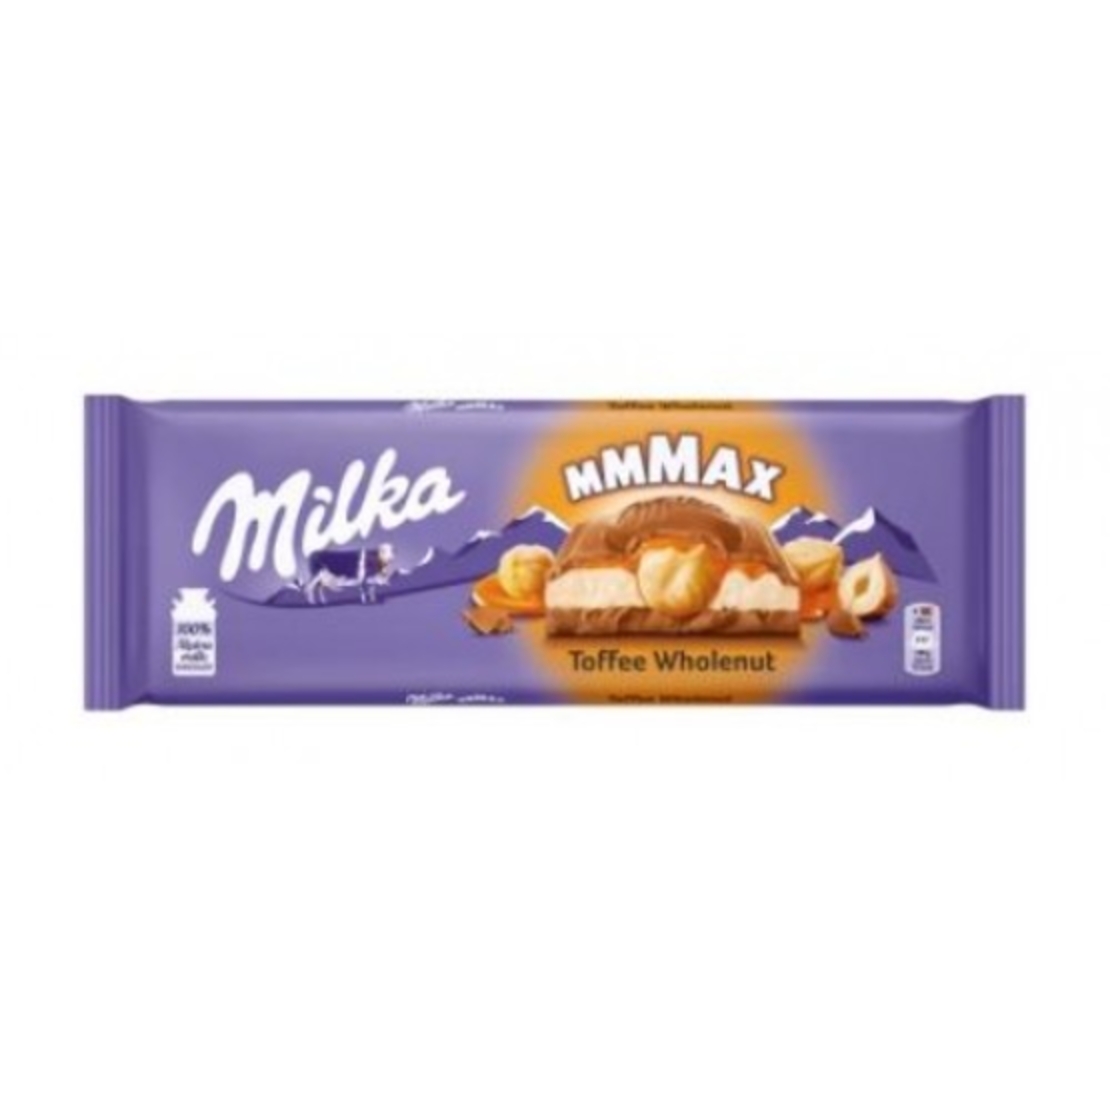 Milka - MMMAX Toffee Wholenut 300g